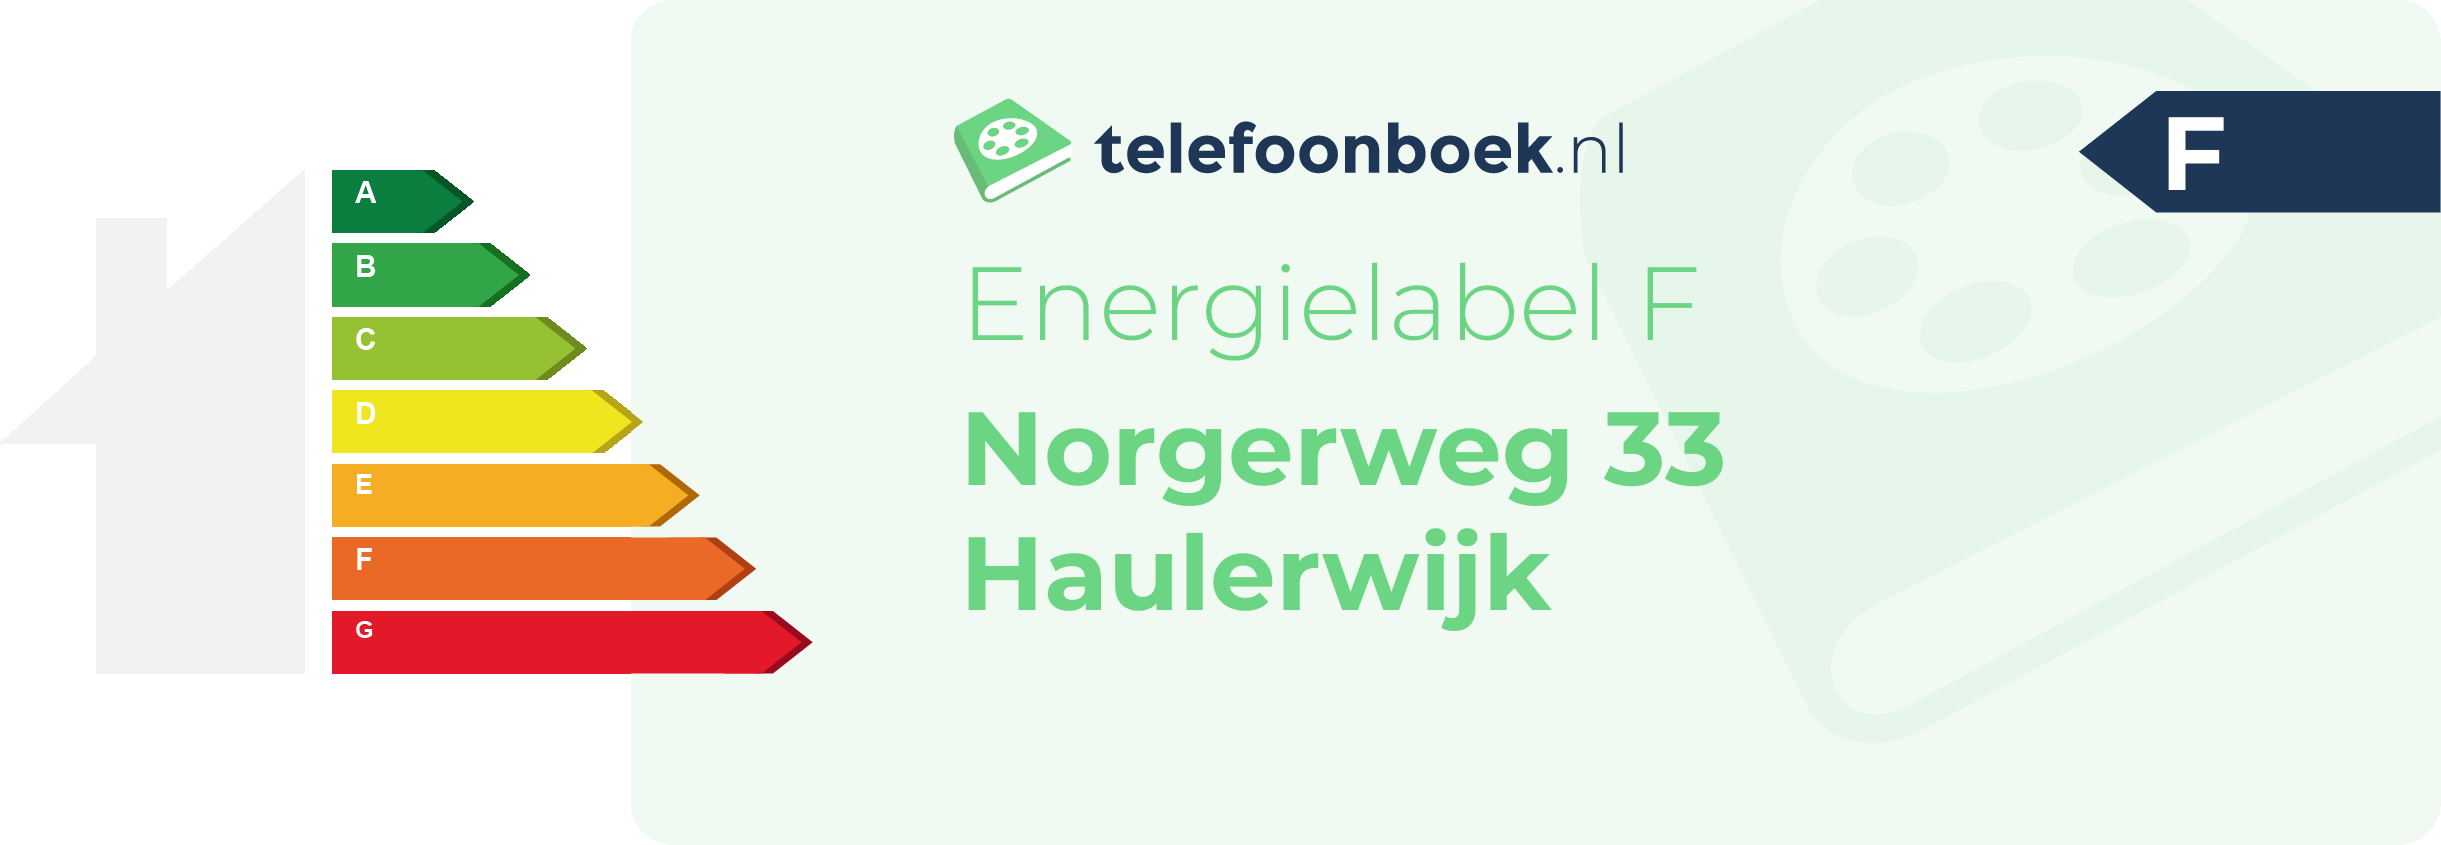 Energielabel Norgerweg 33 Haulerwijk